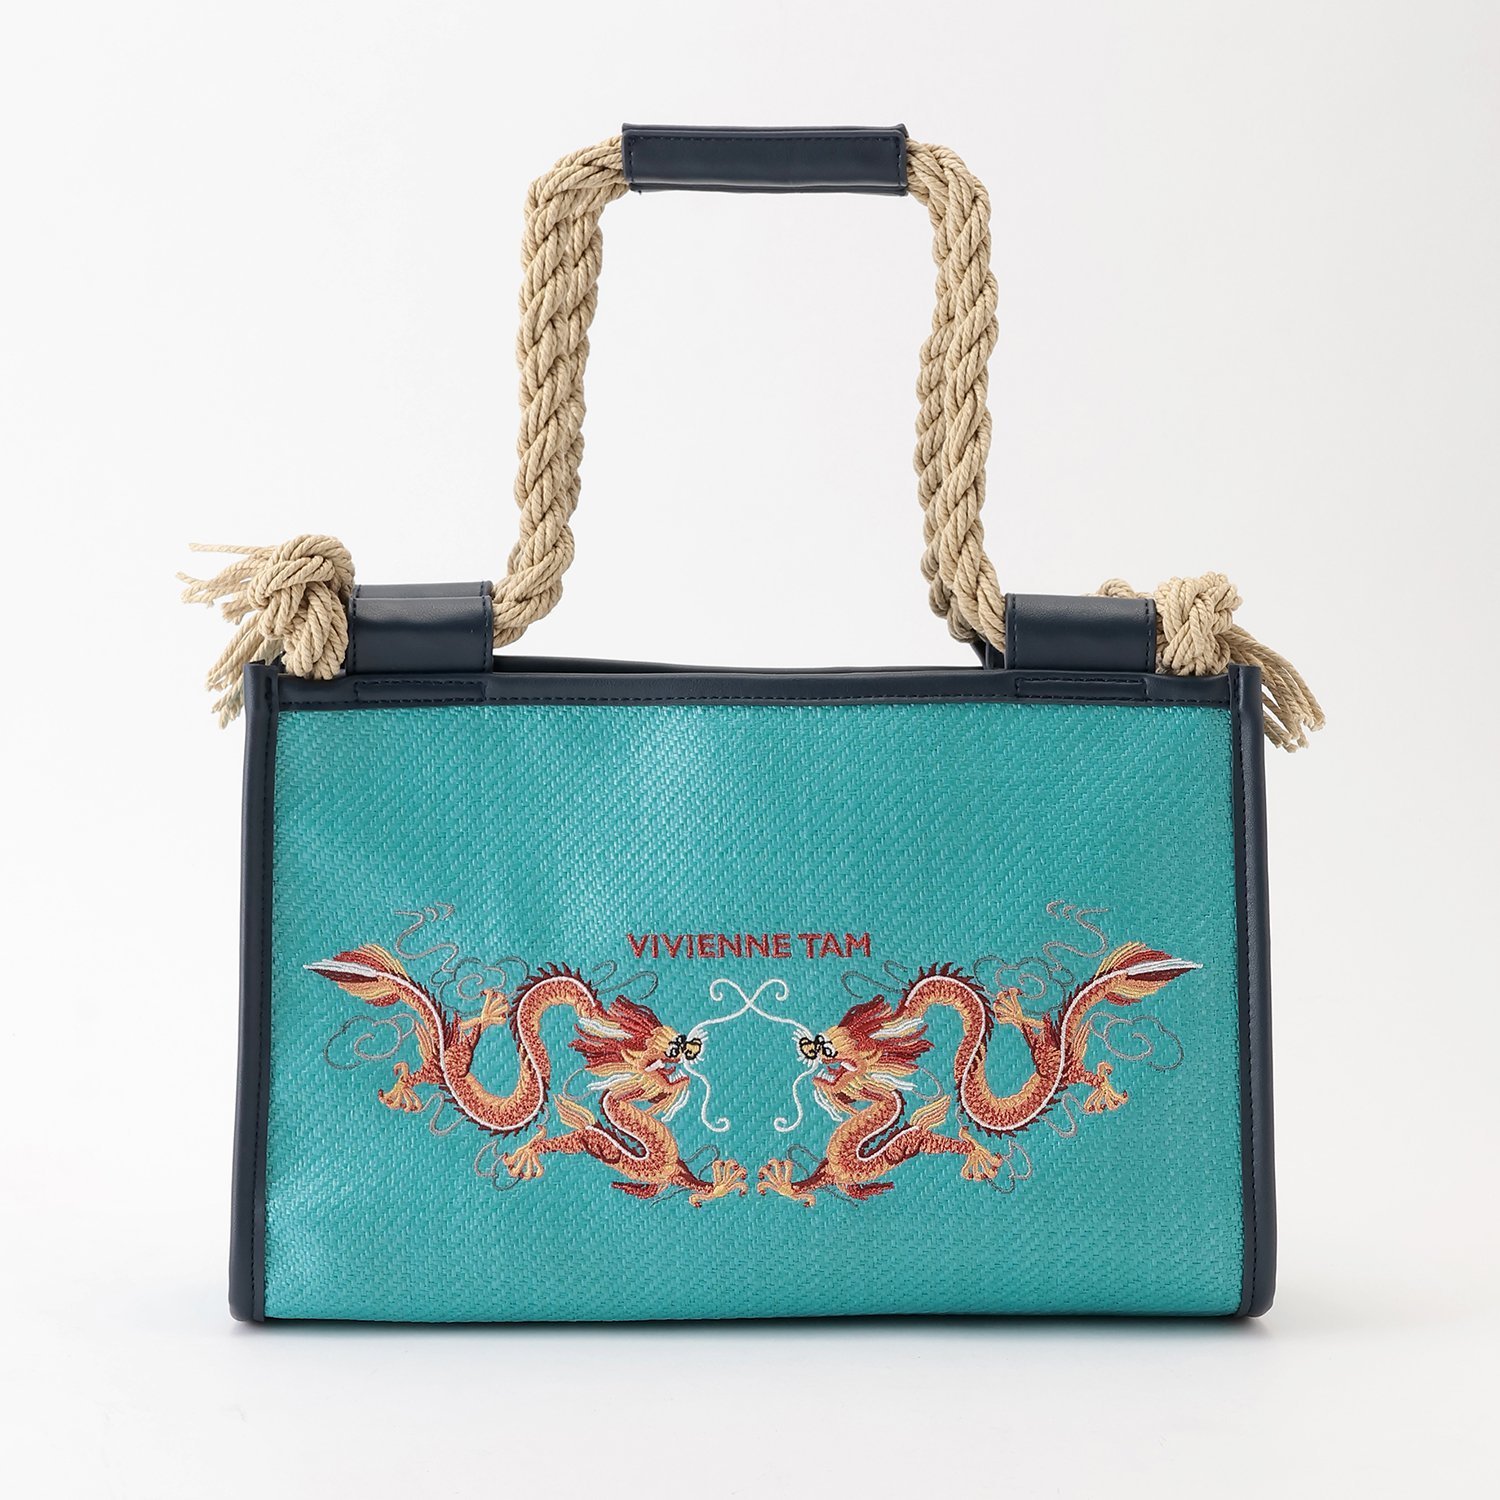 ヴィヴィアンタム 茶系バッグ ブロンズのドラゴン刺繍 - ファッション